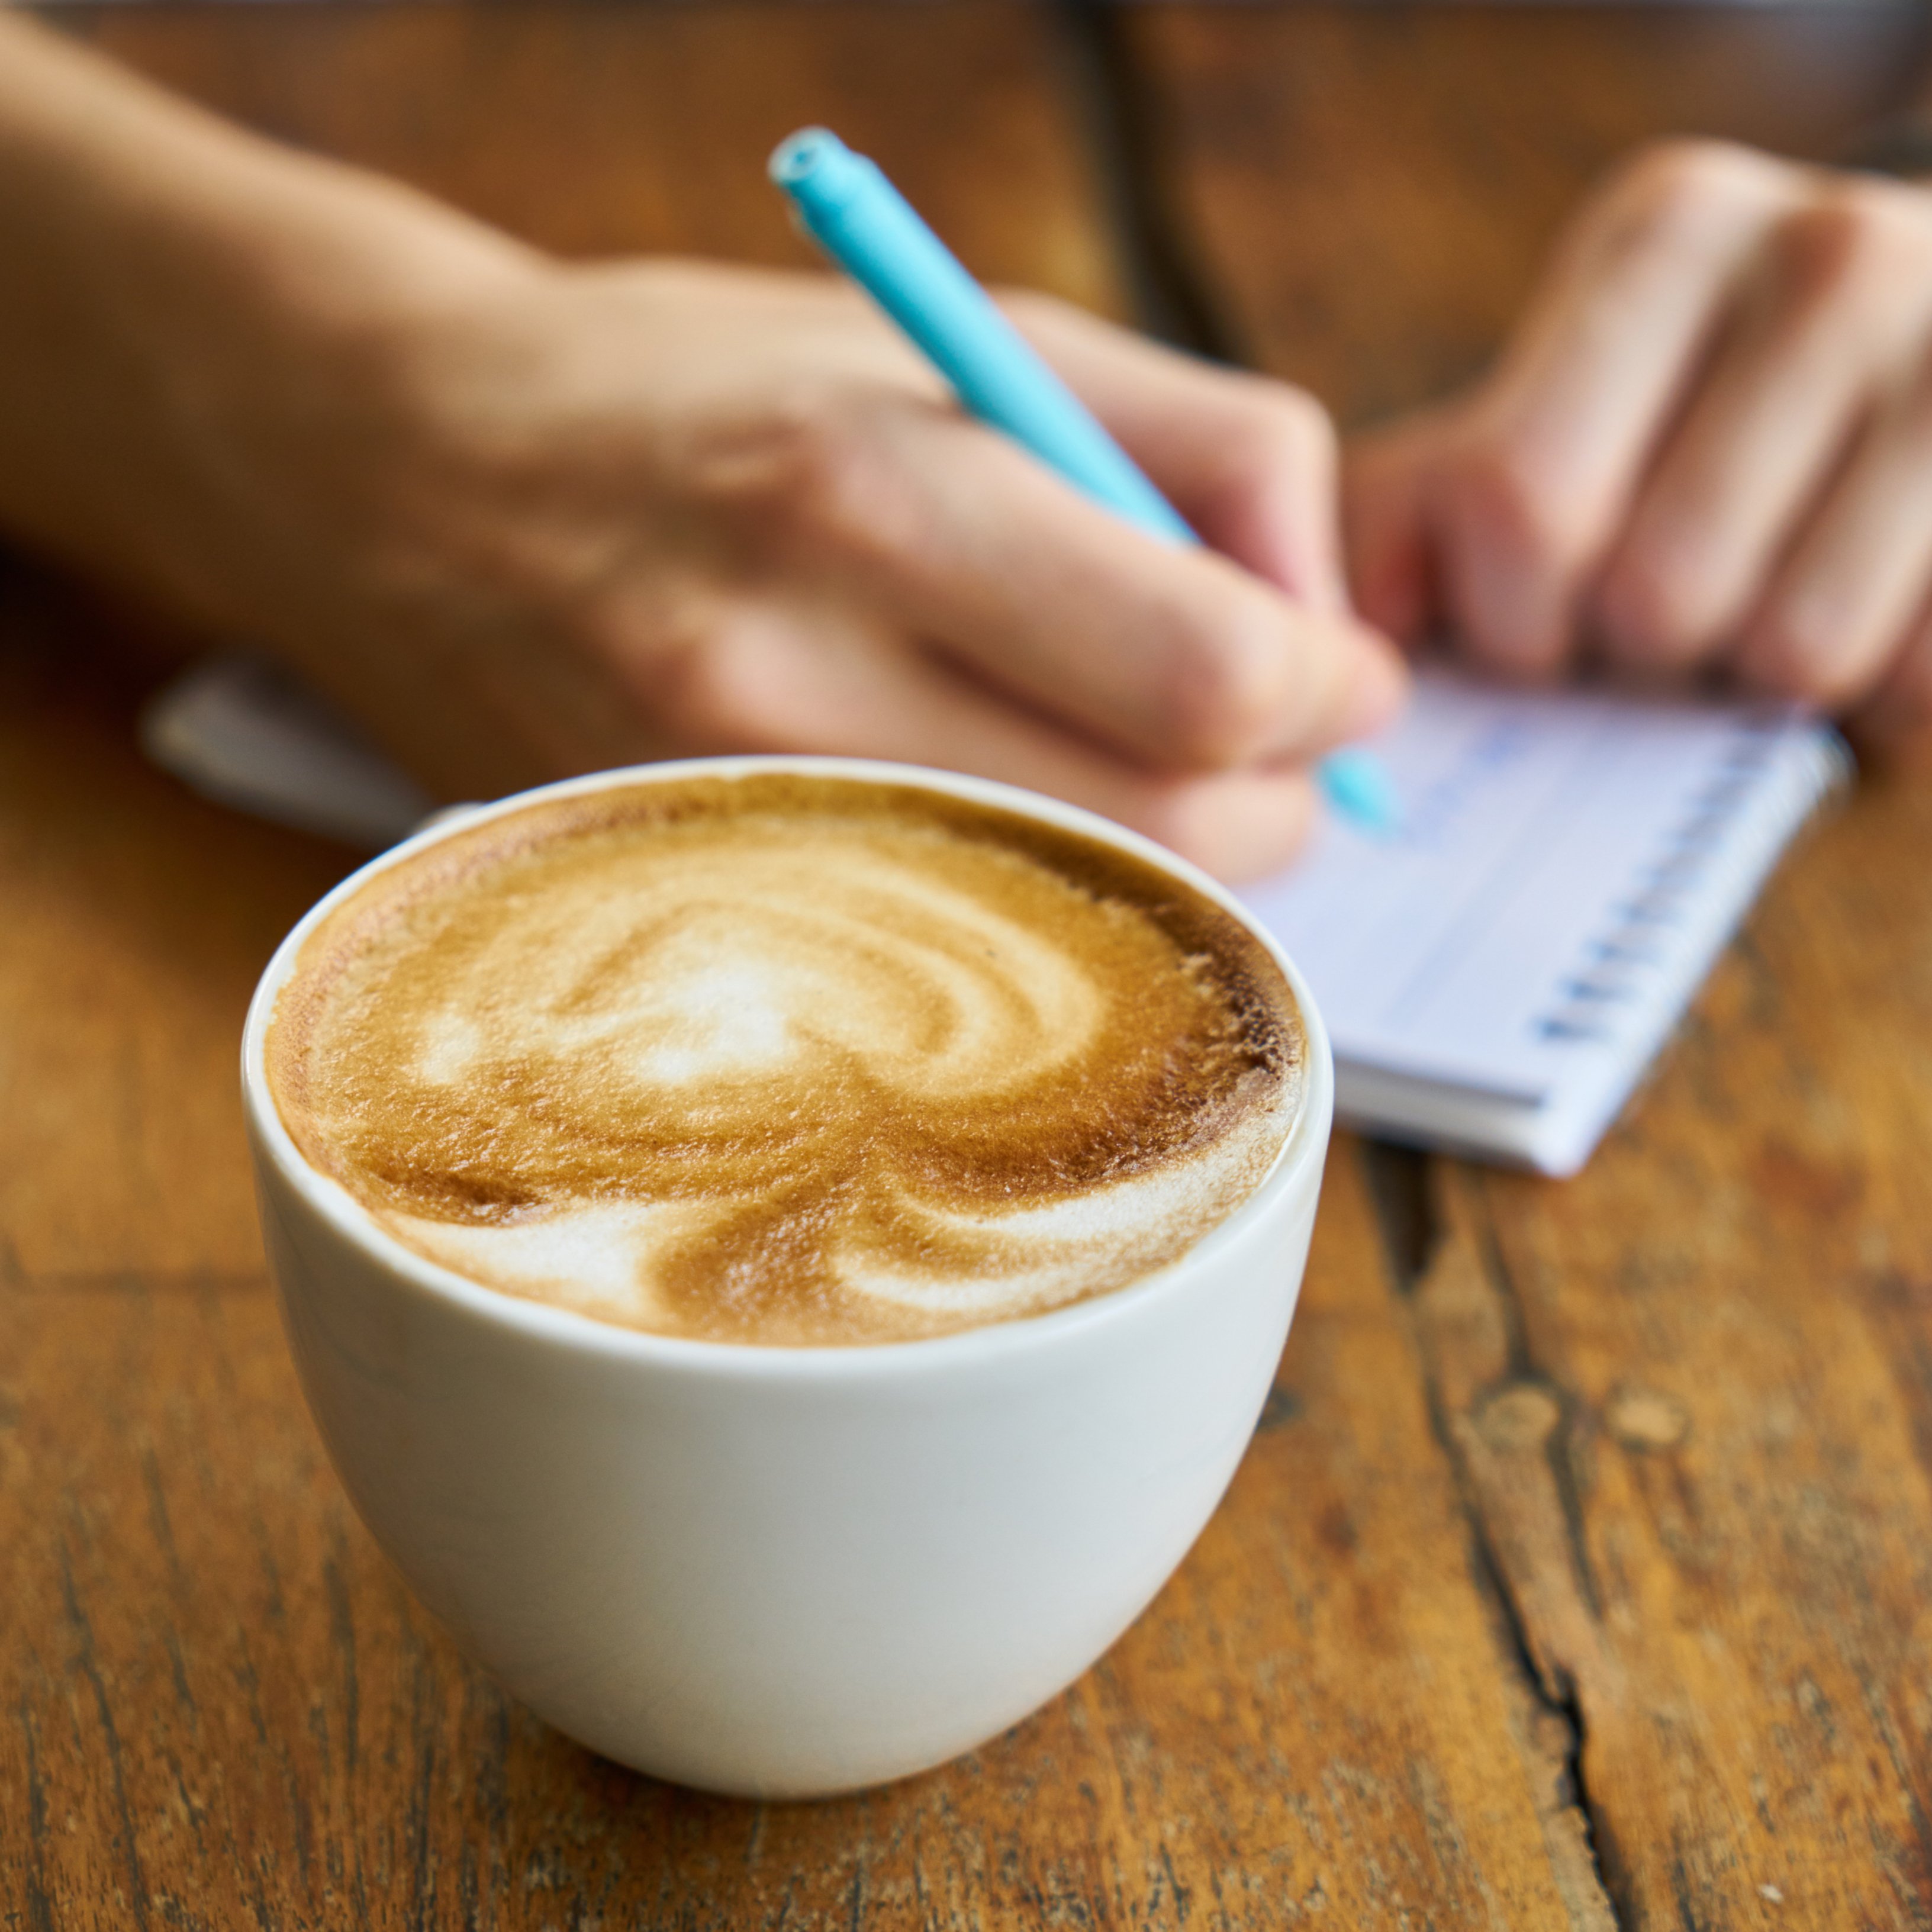 Cuatro tazas de café al día pueden aumentar el riesgo de padecer glaucoma